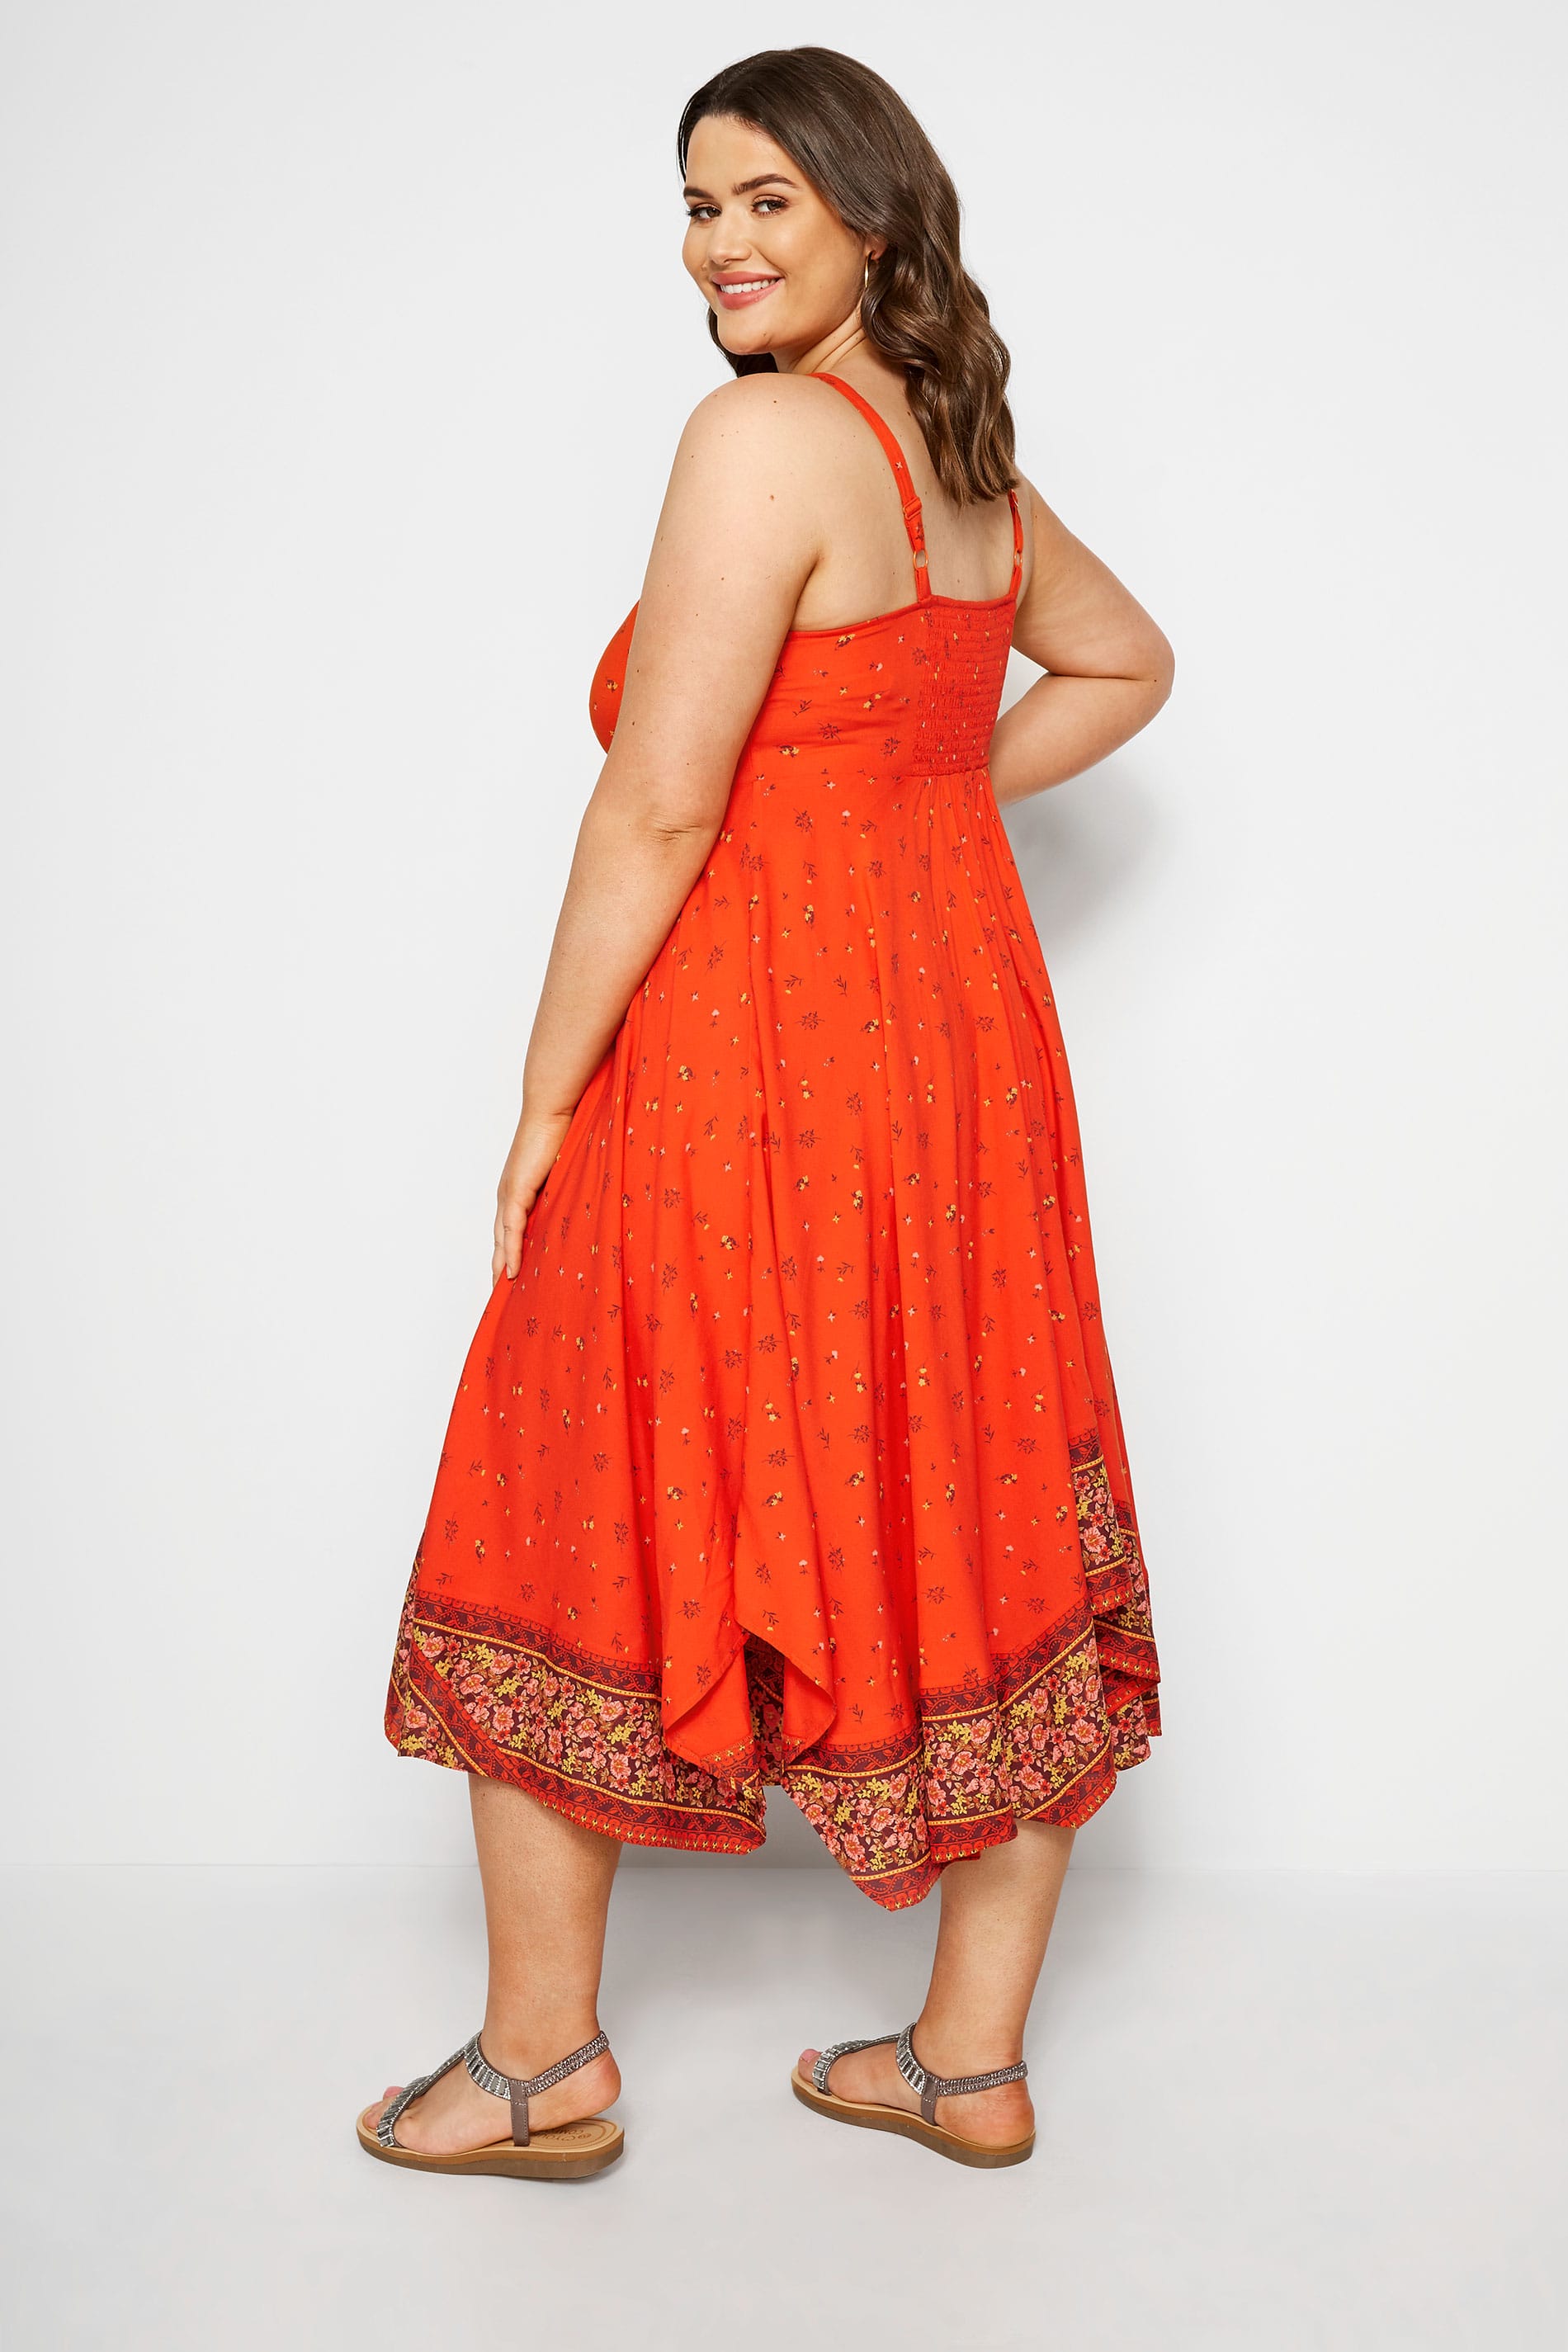 Zipfelsaum Kleid Mit Blumenkante Orange Große Größen 44